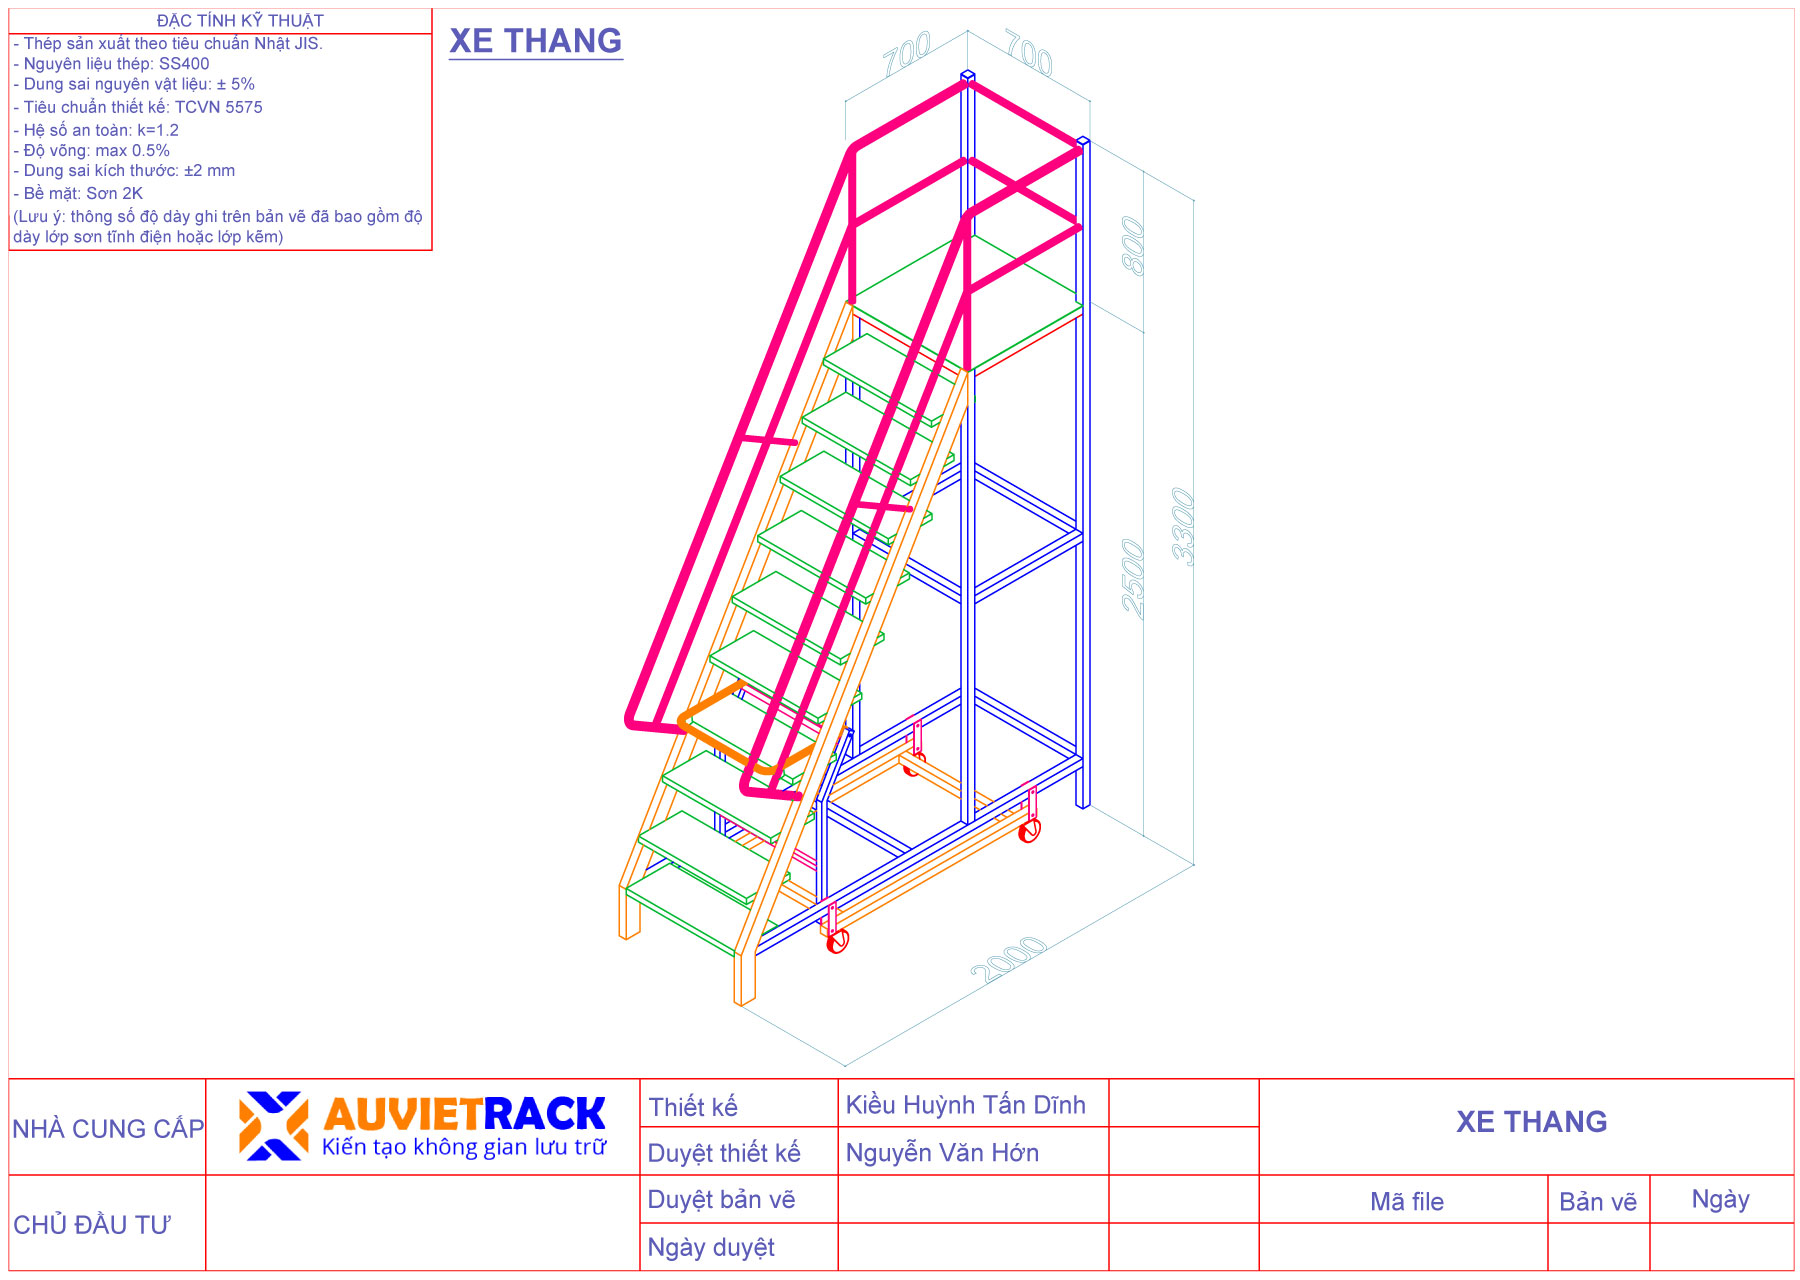 Bản vẽ 3D xe thang công nghiệp - Au Viet Rack